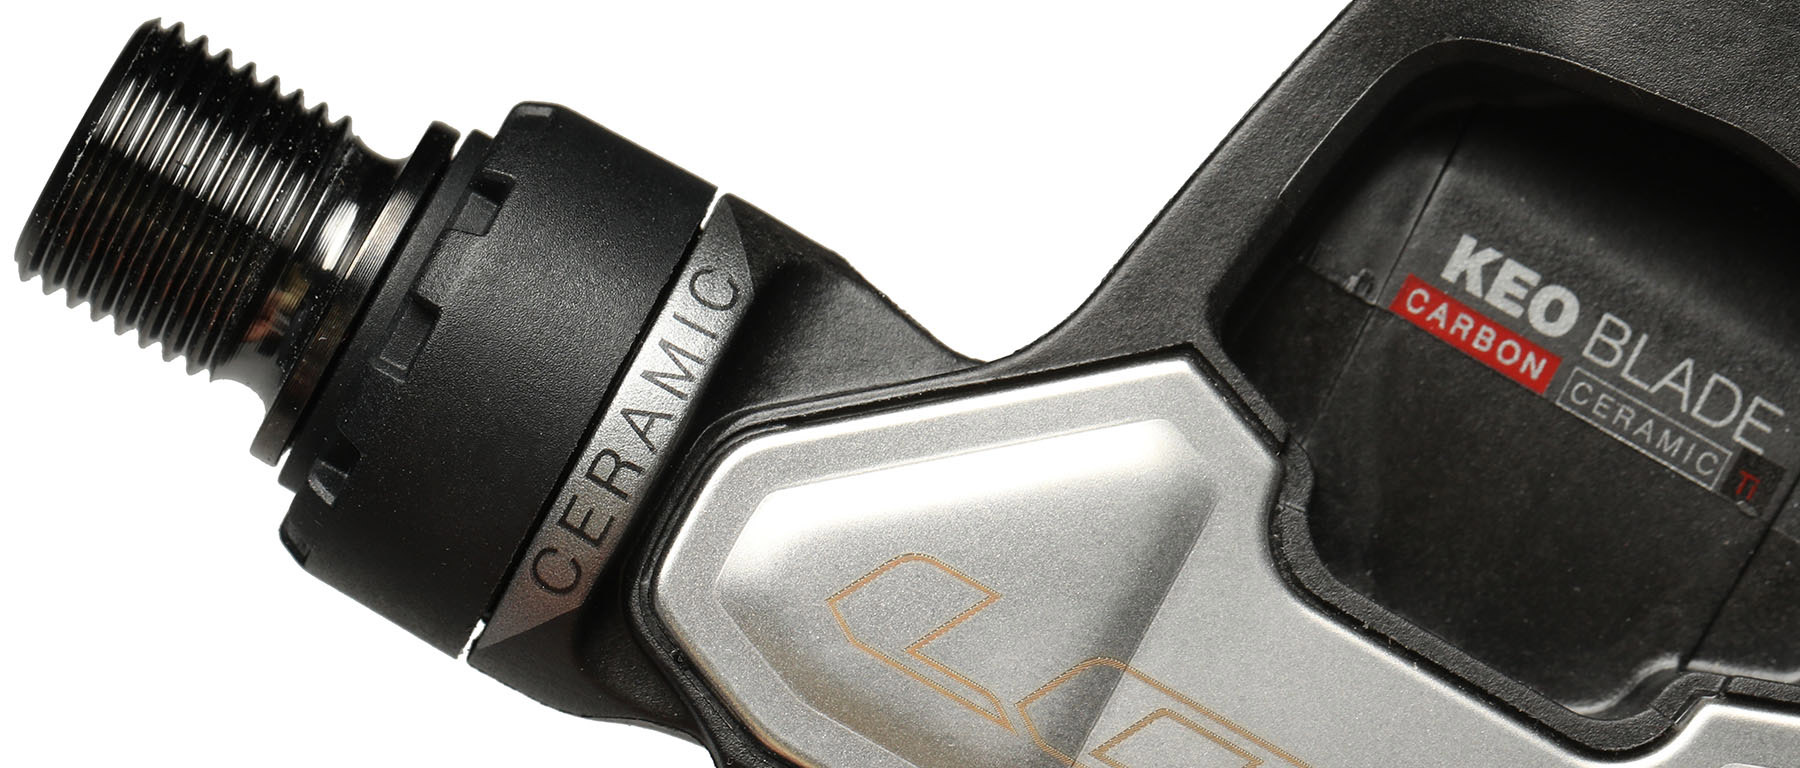 LOOK Keo Blade Carbon Ceramic Ti Pedals